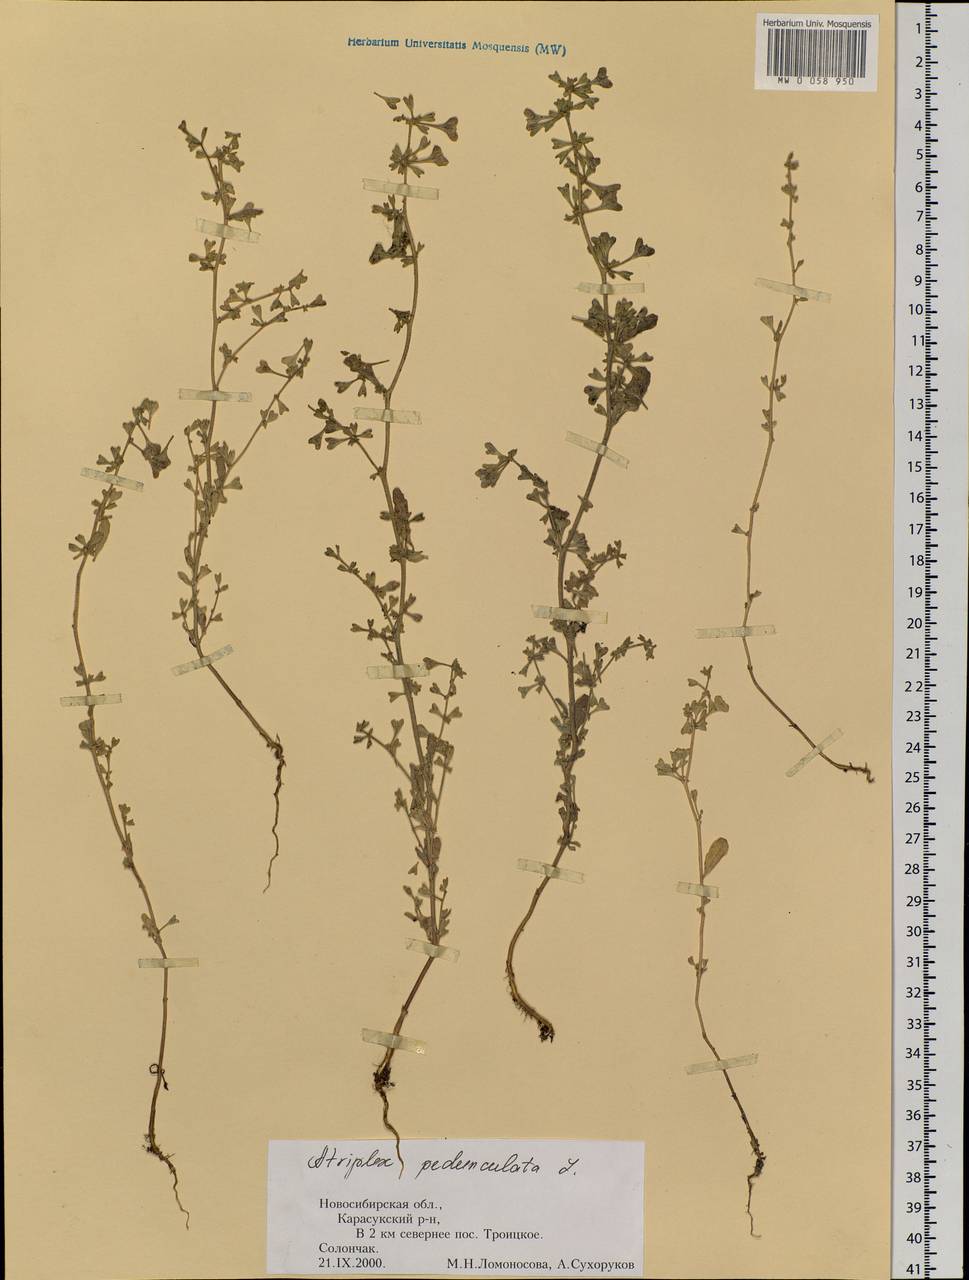 Halimione pedunculata (L.) Aellen, Siberia, Western Siberia (S1) (Russia)